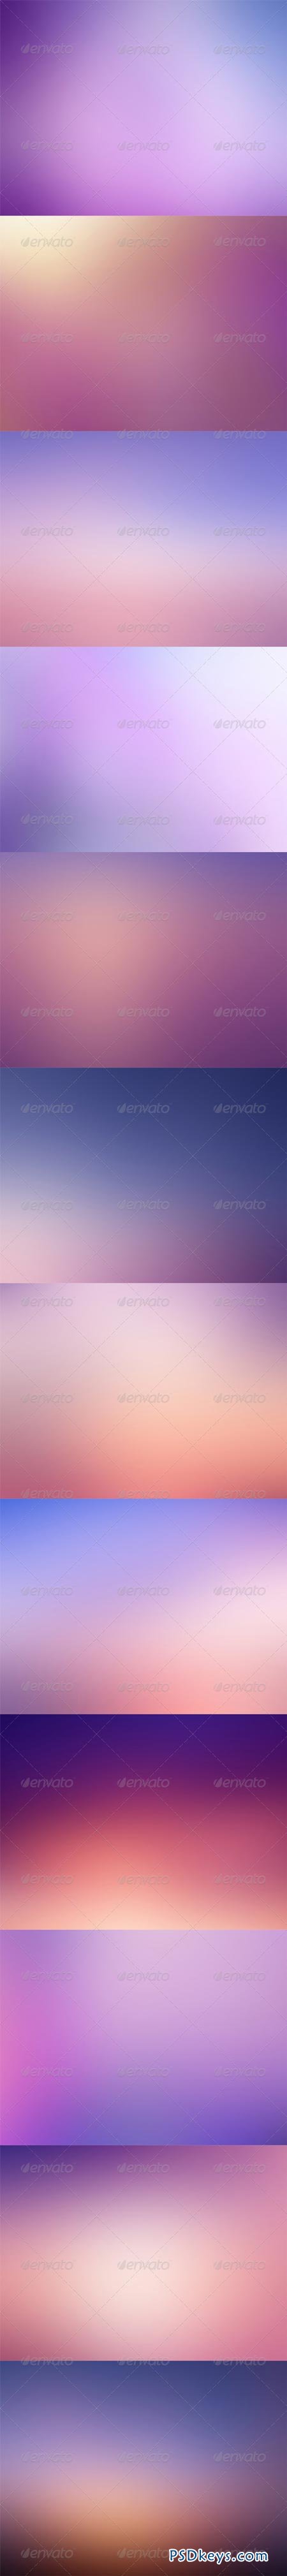 12 Purple Backgrounds - HD 5677984